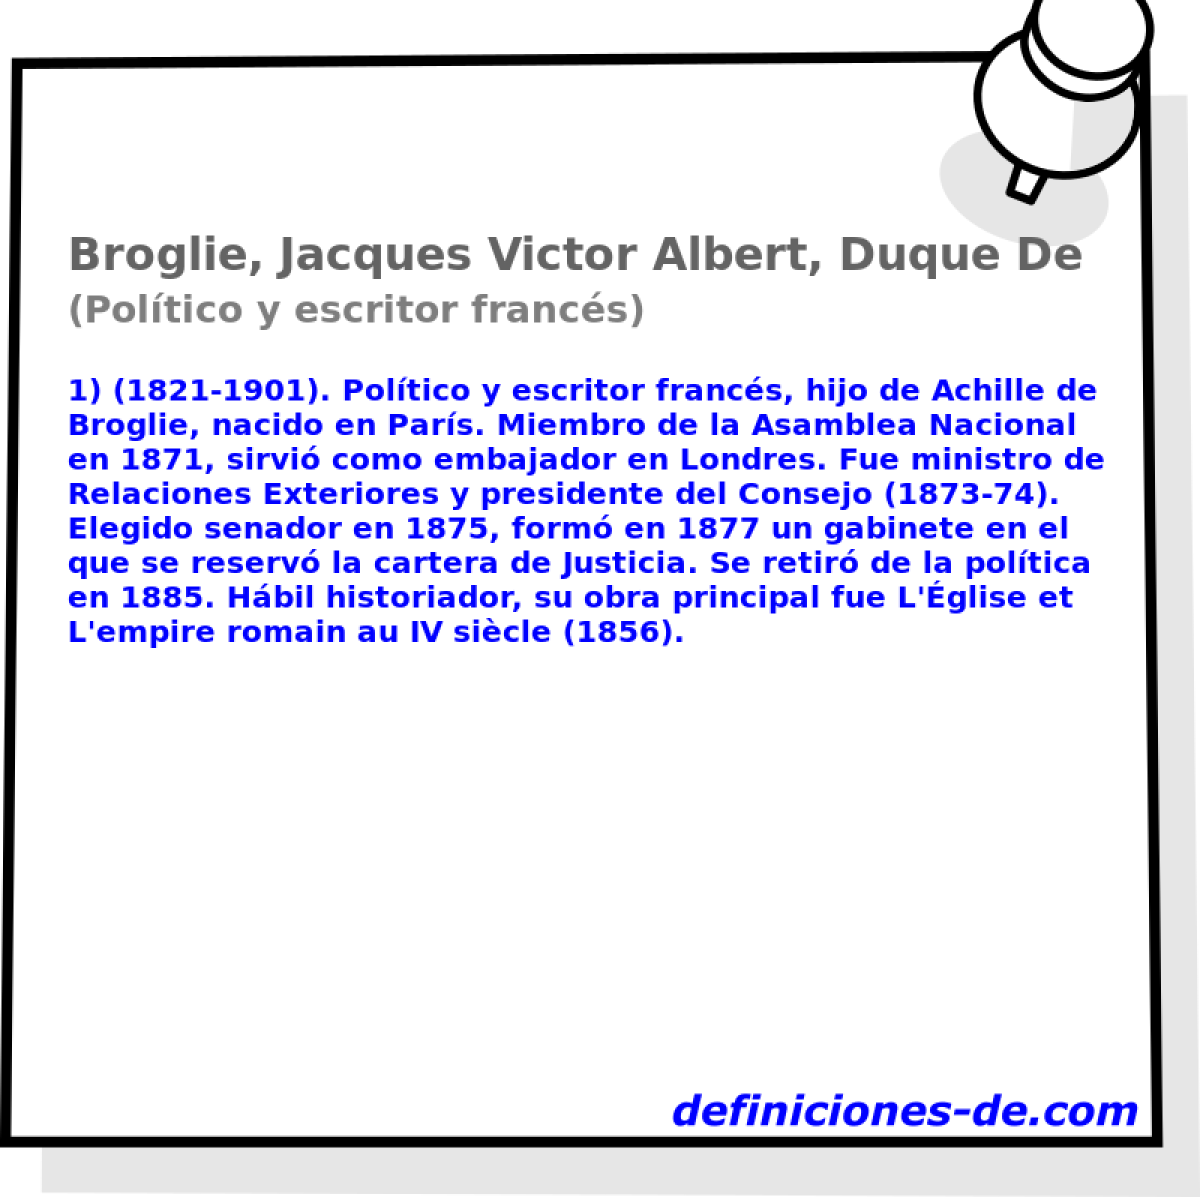 Broglie, Jacques Victor Albert, Duque De (Poltico y escritor francs)